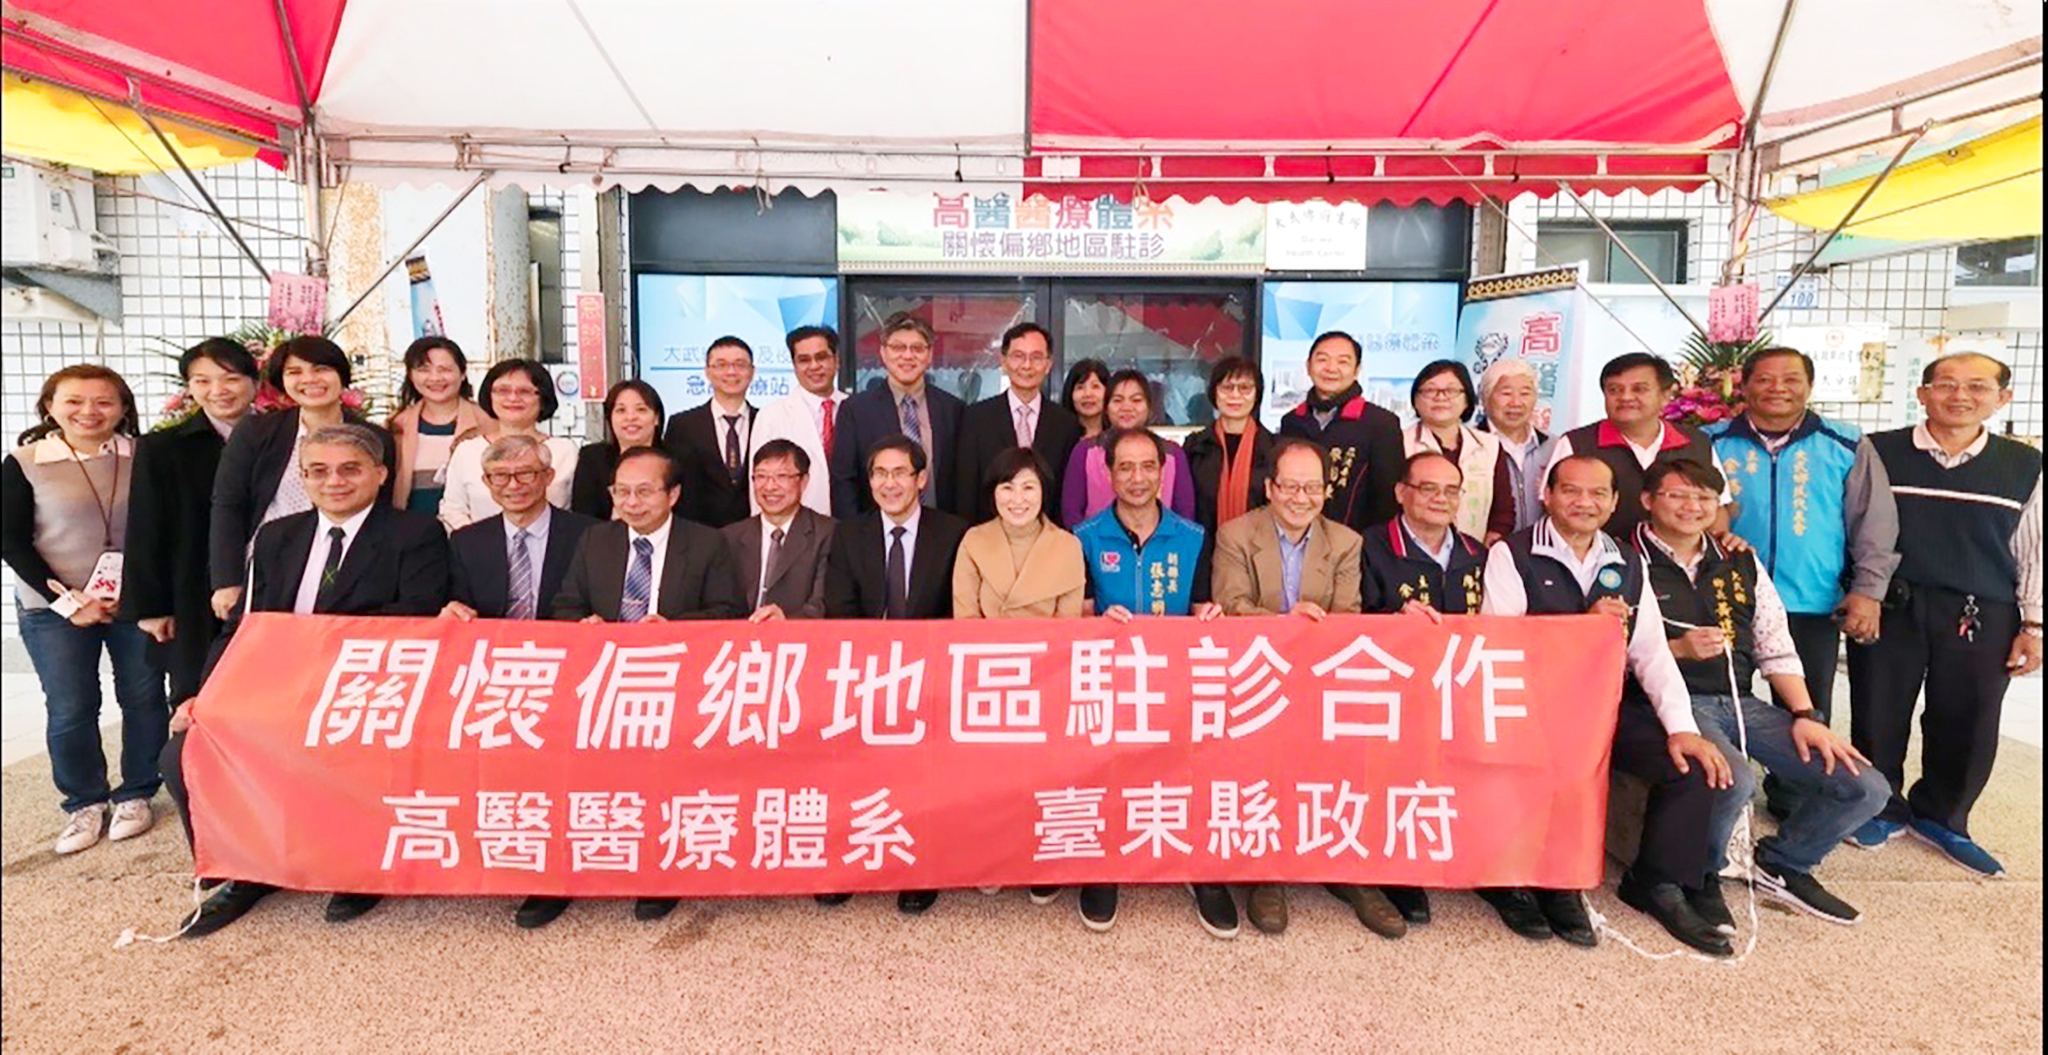 2019年2月高醫體系支援台東大武偏鄉醫療揭牌典禮，前排左3為侯明鋒教授。